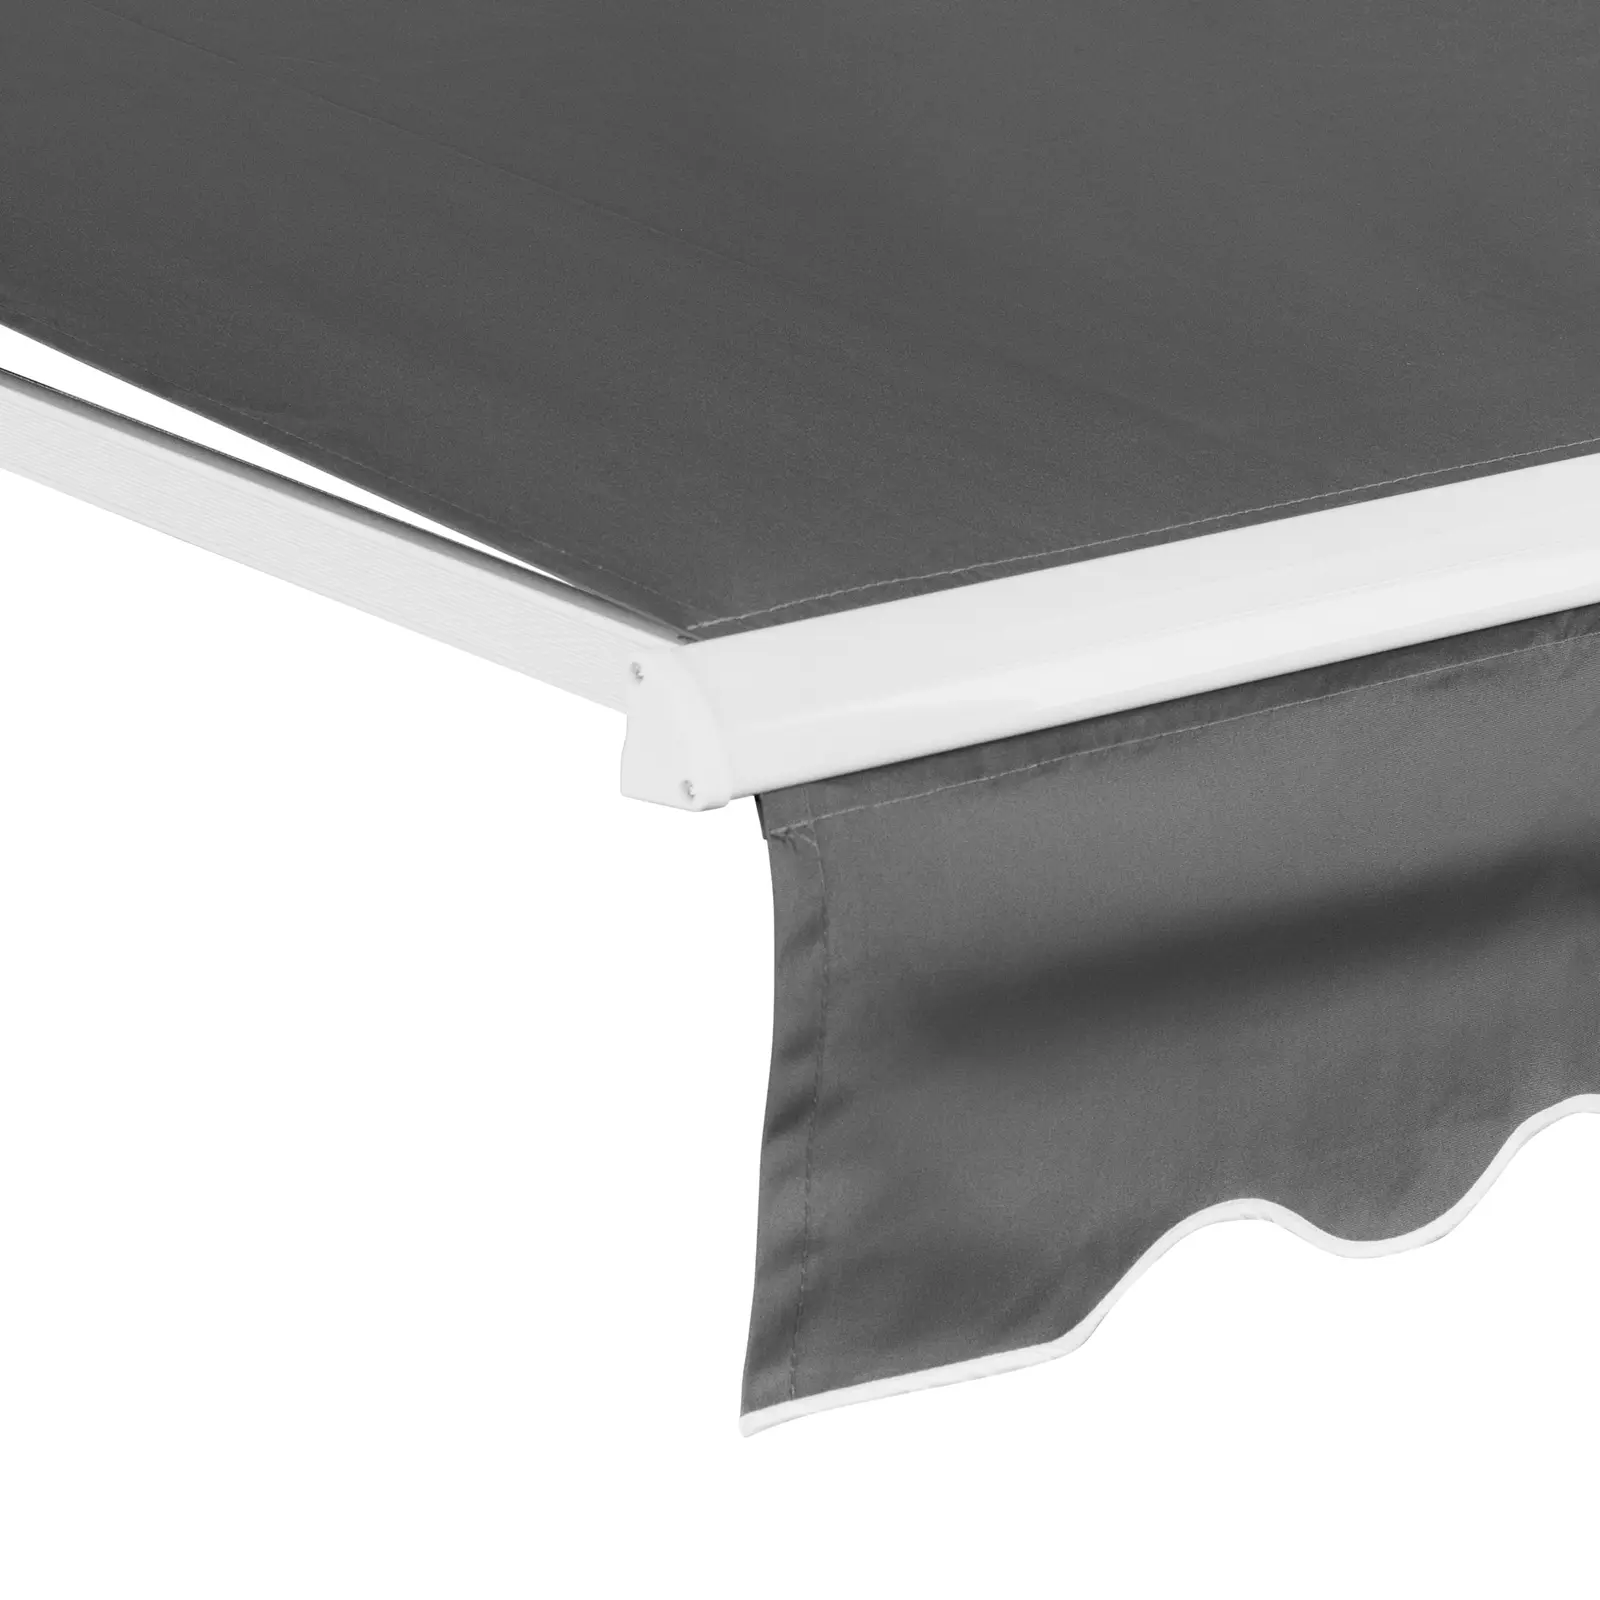 B-Ware Markise - für Balkon / Terrasse - manuell - 200 x 250 cm - UV-resistent - anthrazitgrau